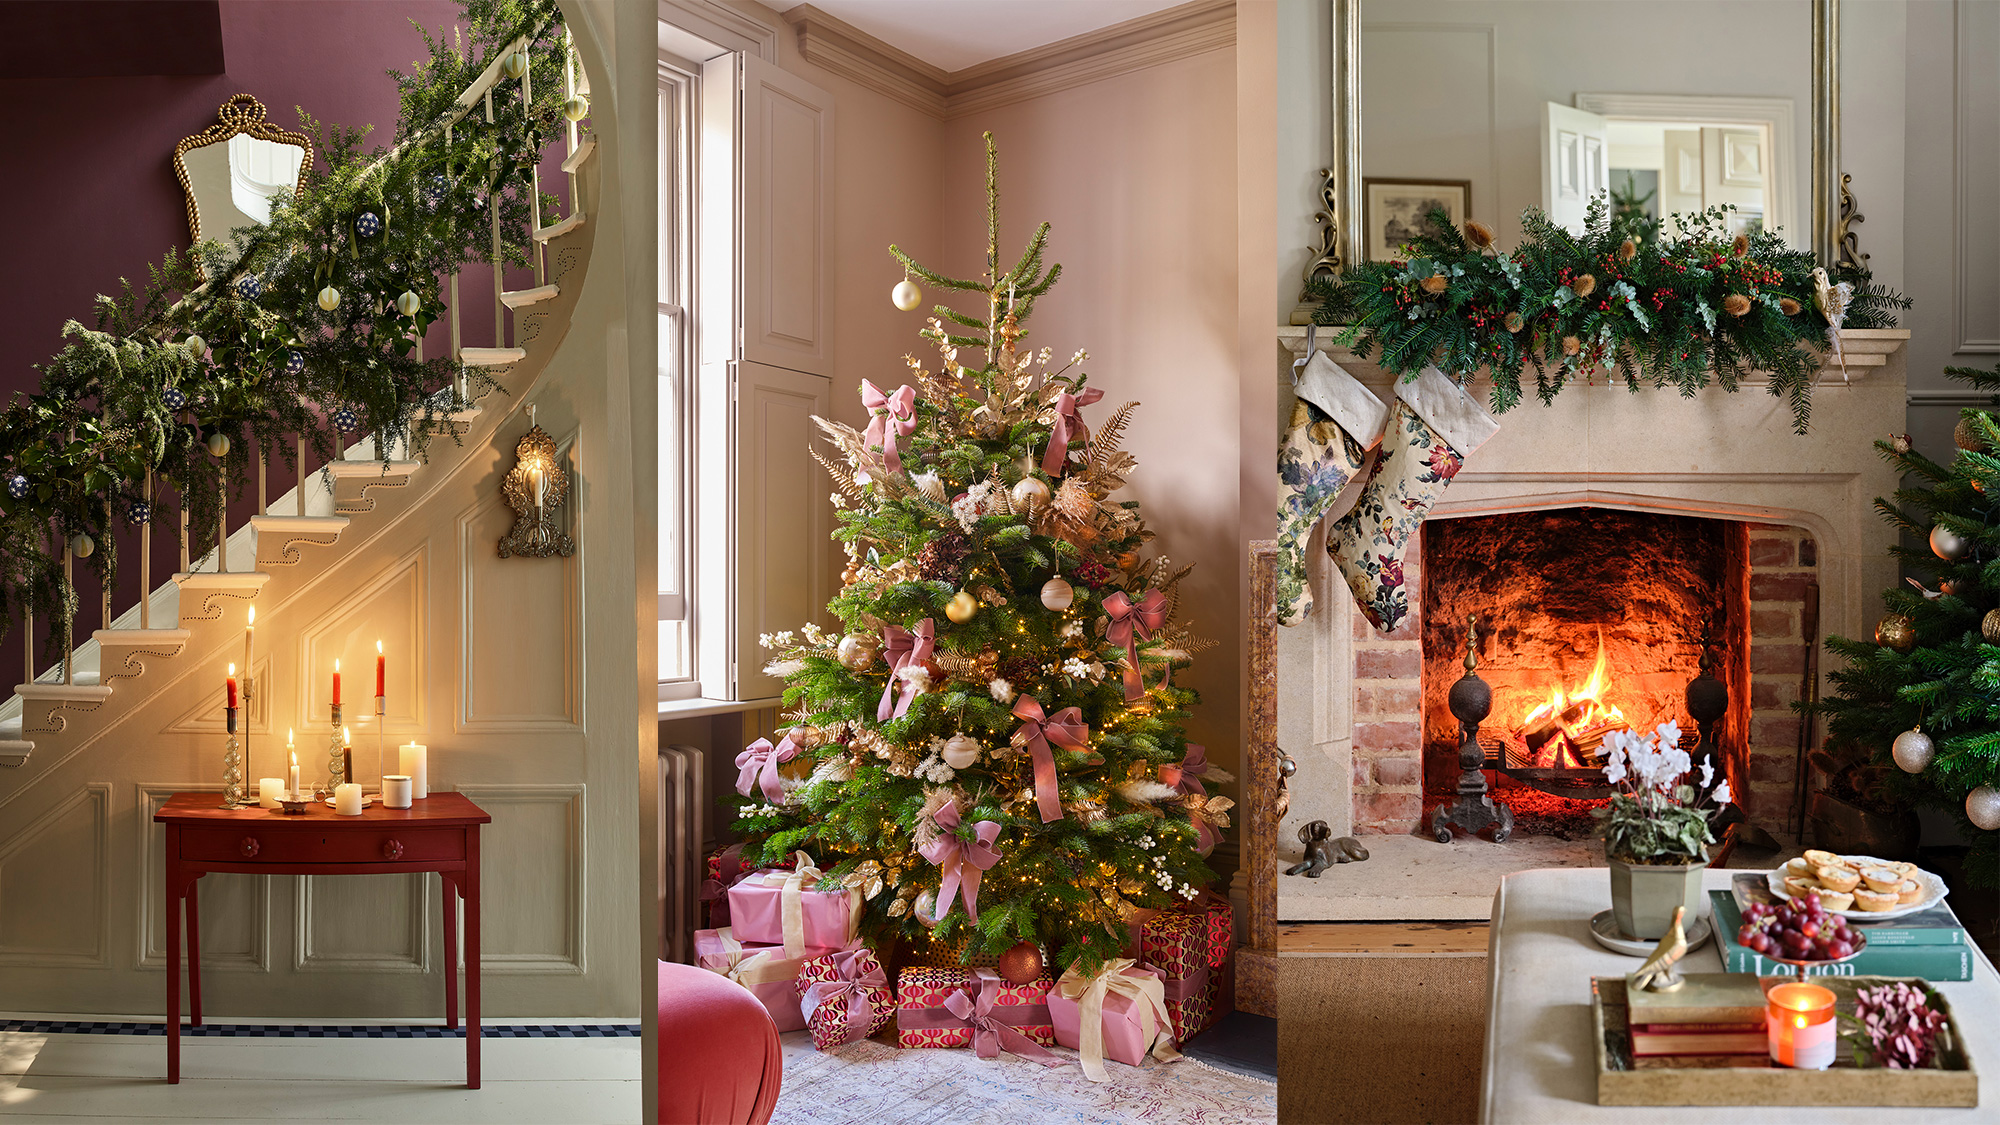 Christmas decor ideas: 21 fabulously festive looks |